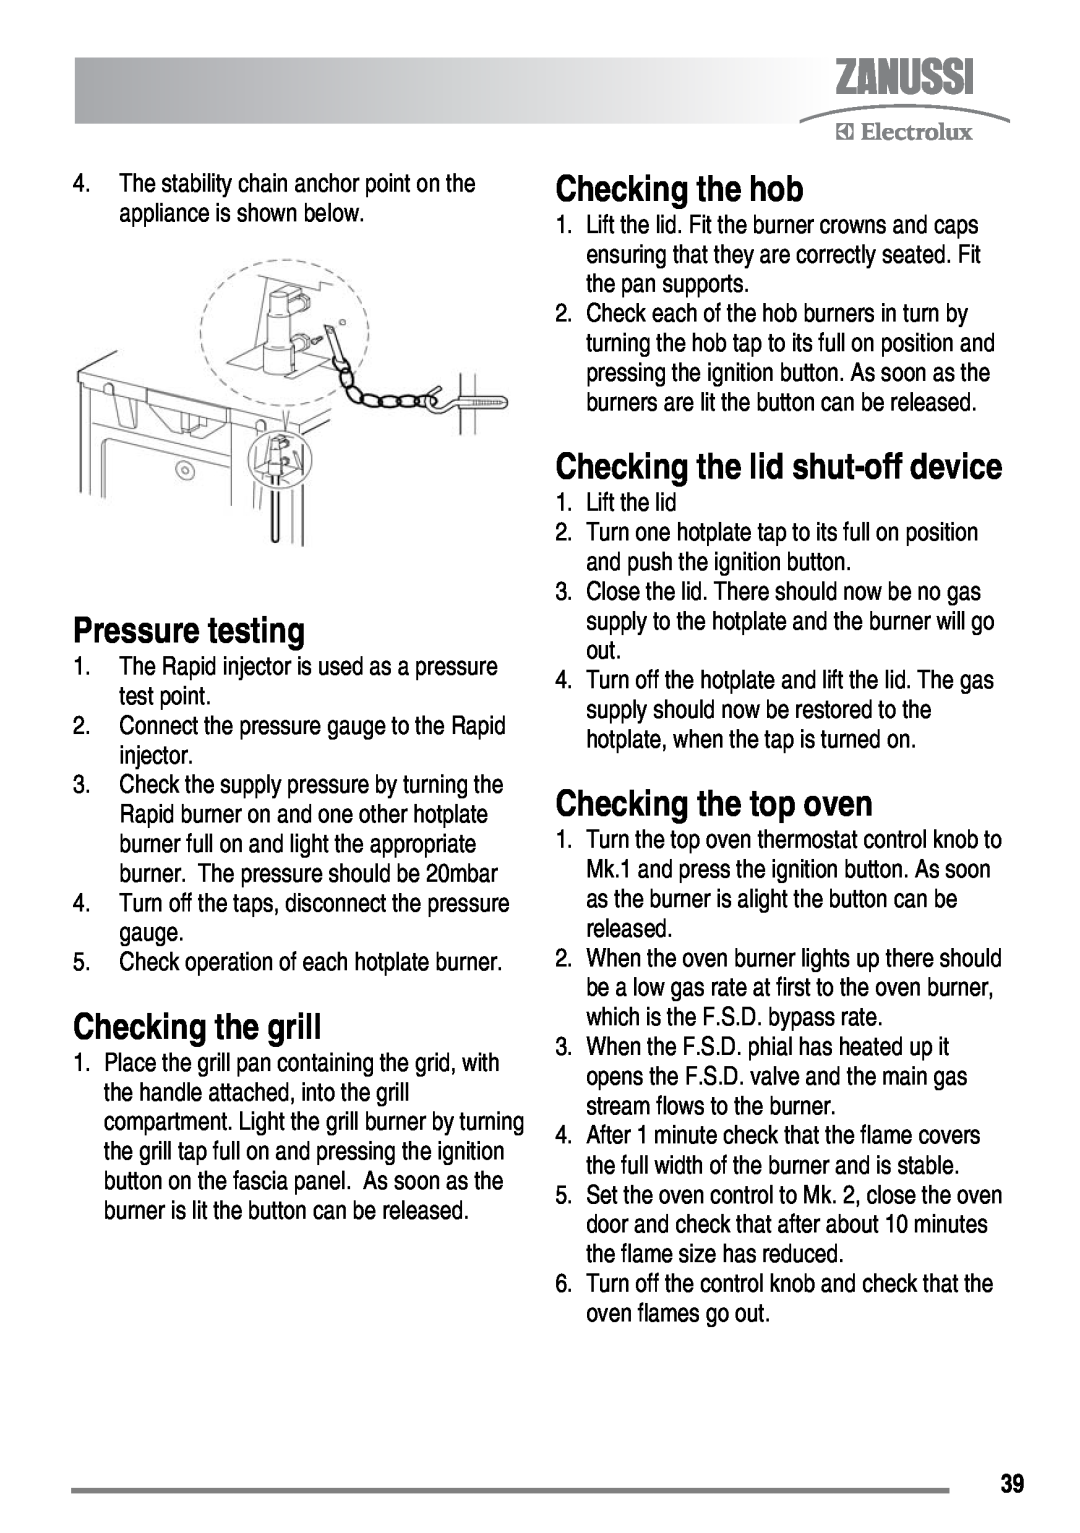 Zanussi FH10 user manual Pressure testing, Checking the grill, Checking the hob, Checking the top oven, Lift the lid 